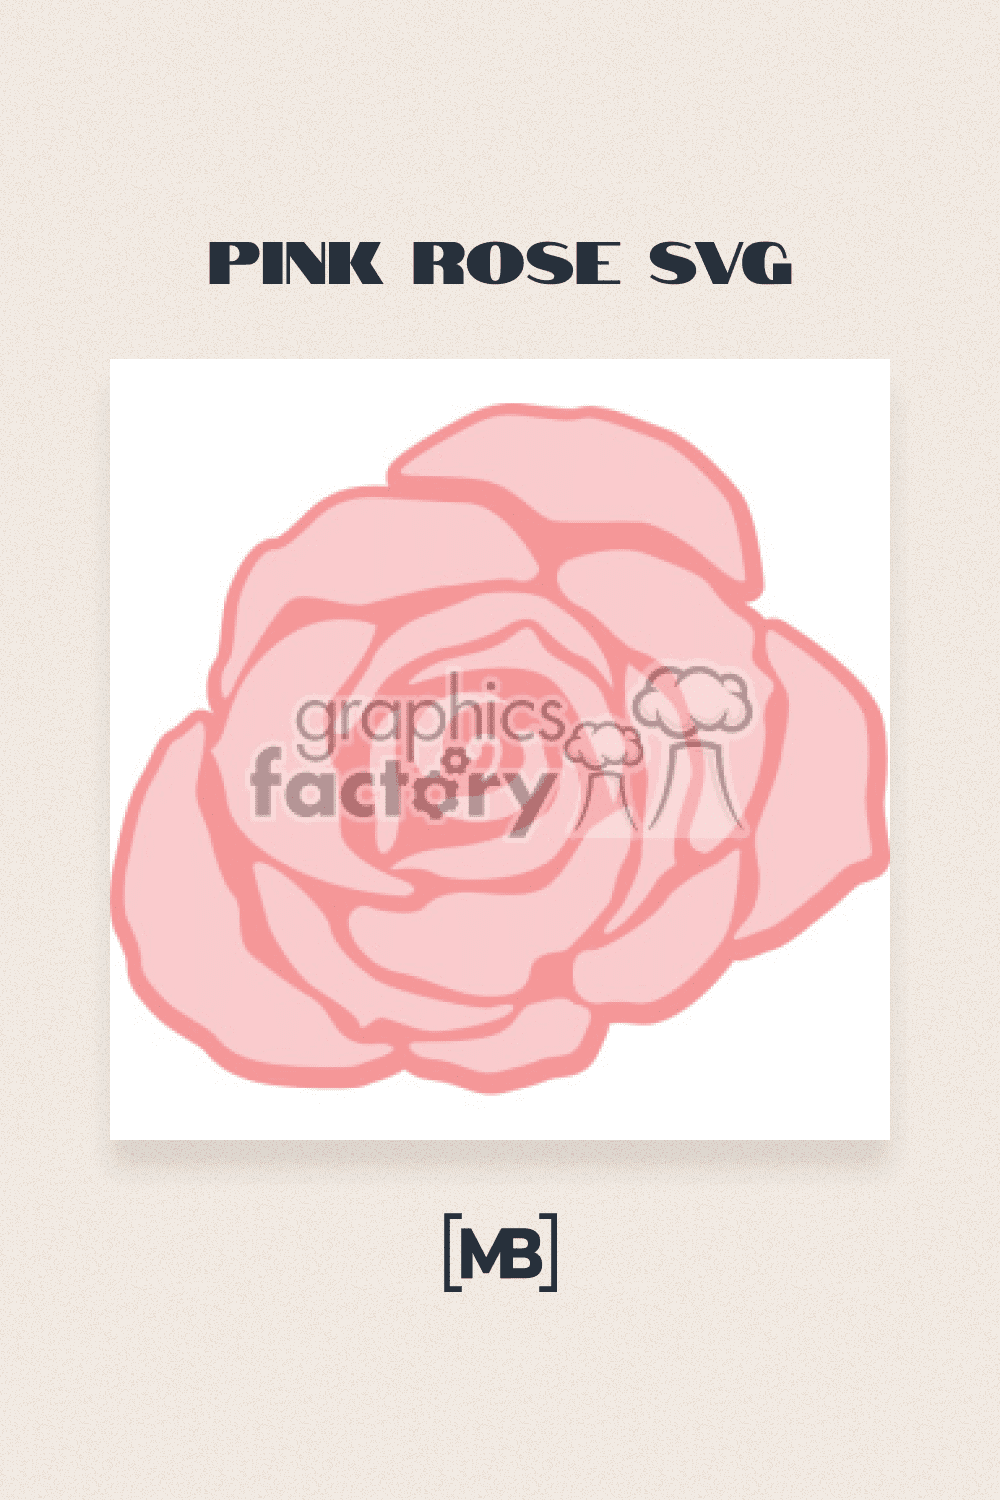 Pink rose svg.